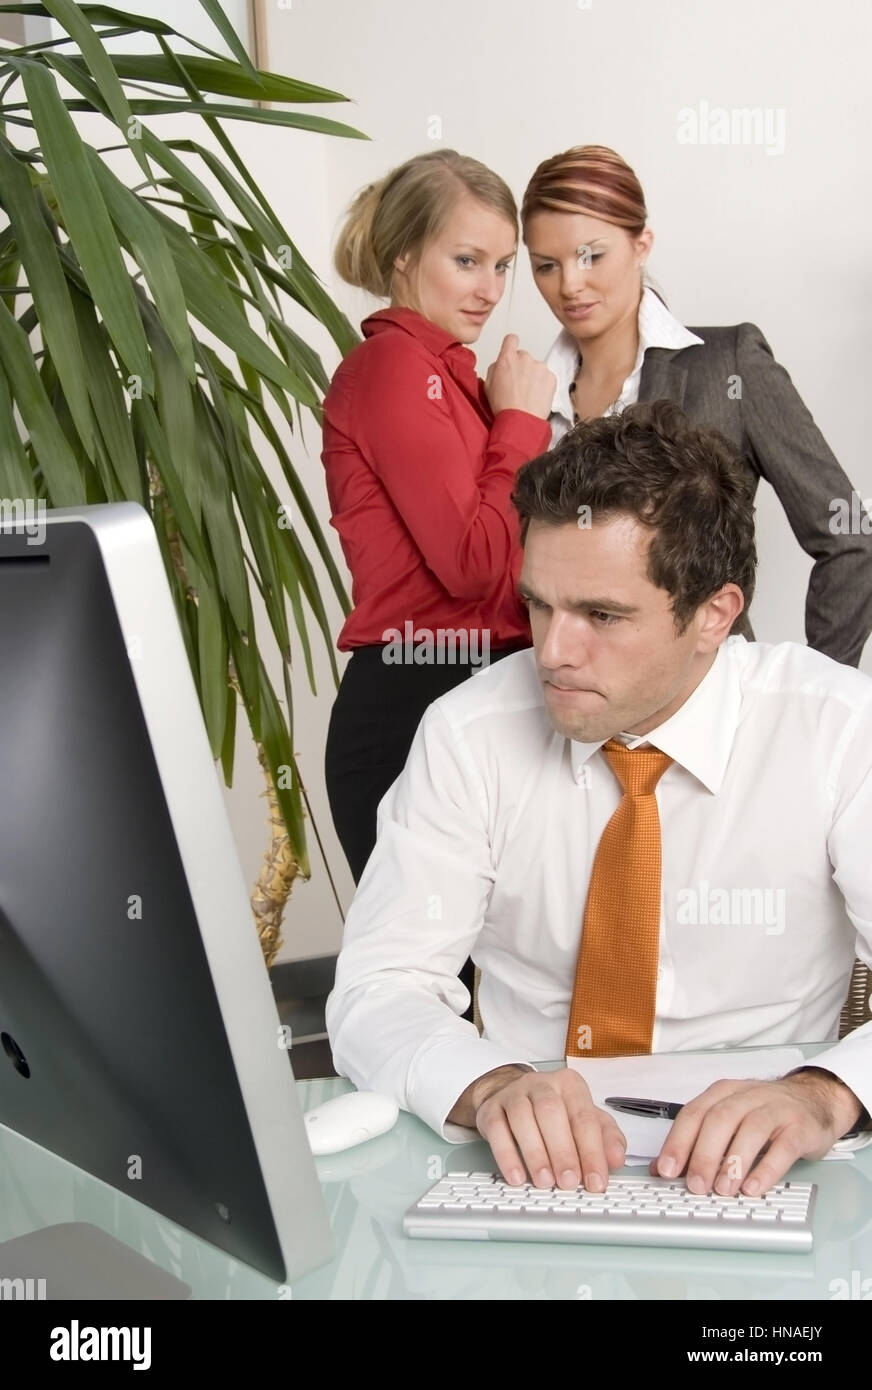 Symbolbild Mobbing am Arbeitsplatz, zwei Frauen reden hinter Ruecken dem des Arbeitskollegen miteinander - simbolico per mobbing al lavoro Foto Stock